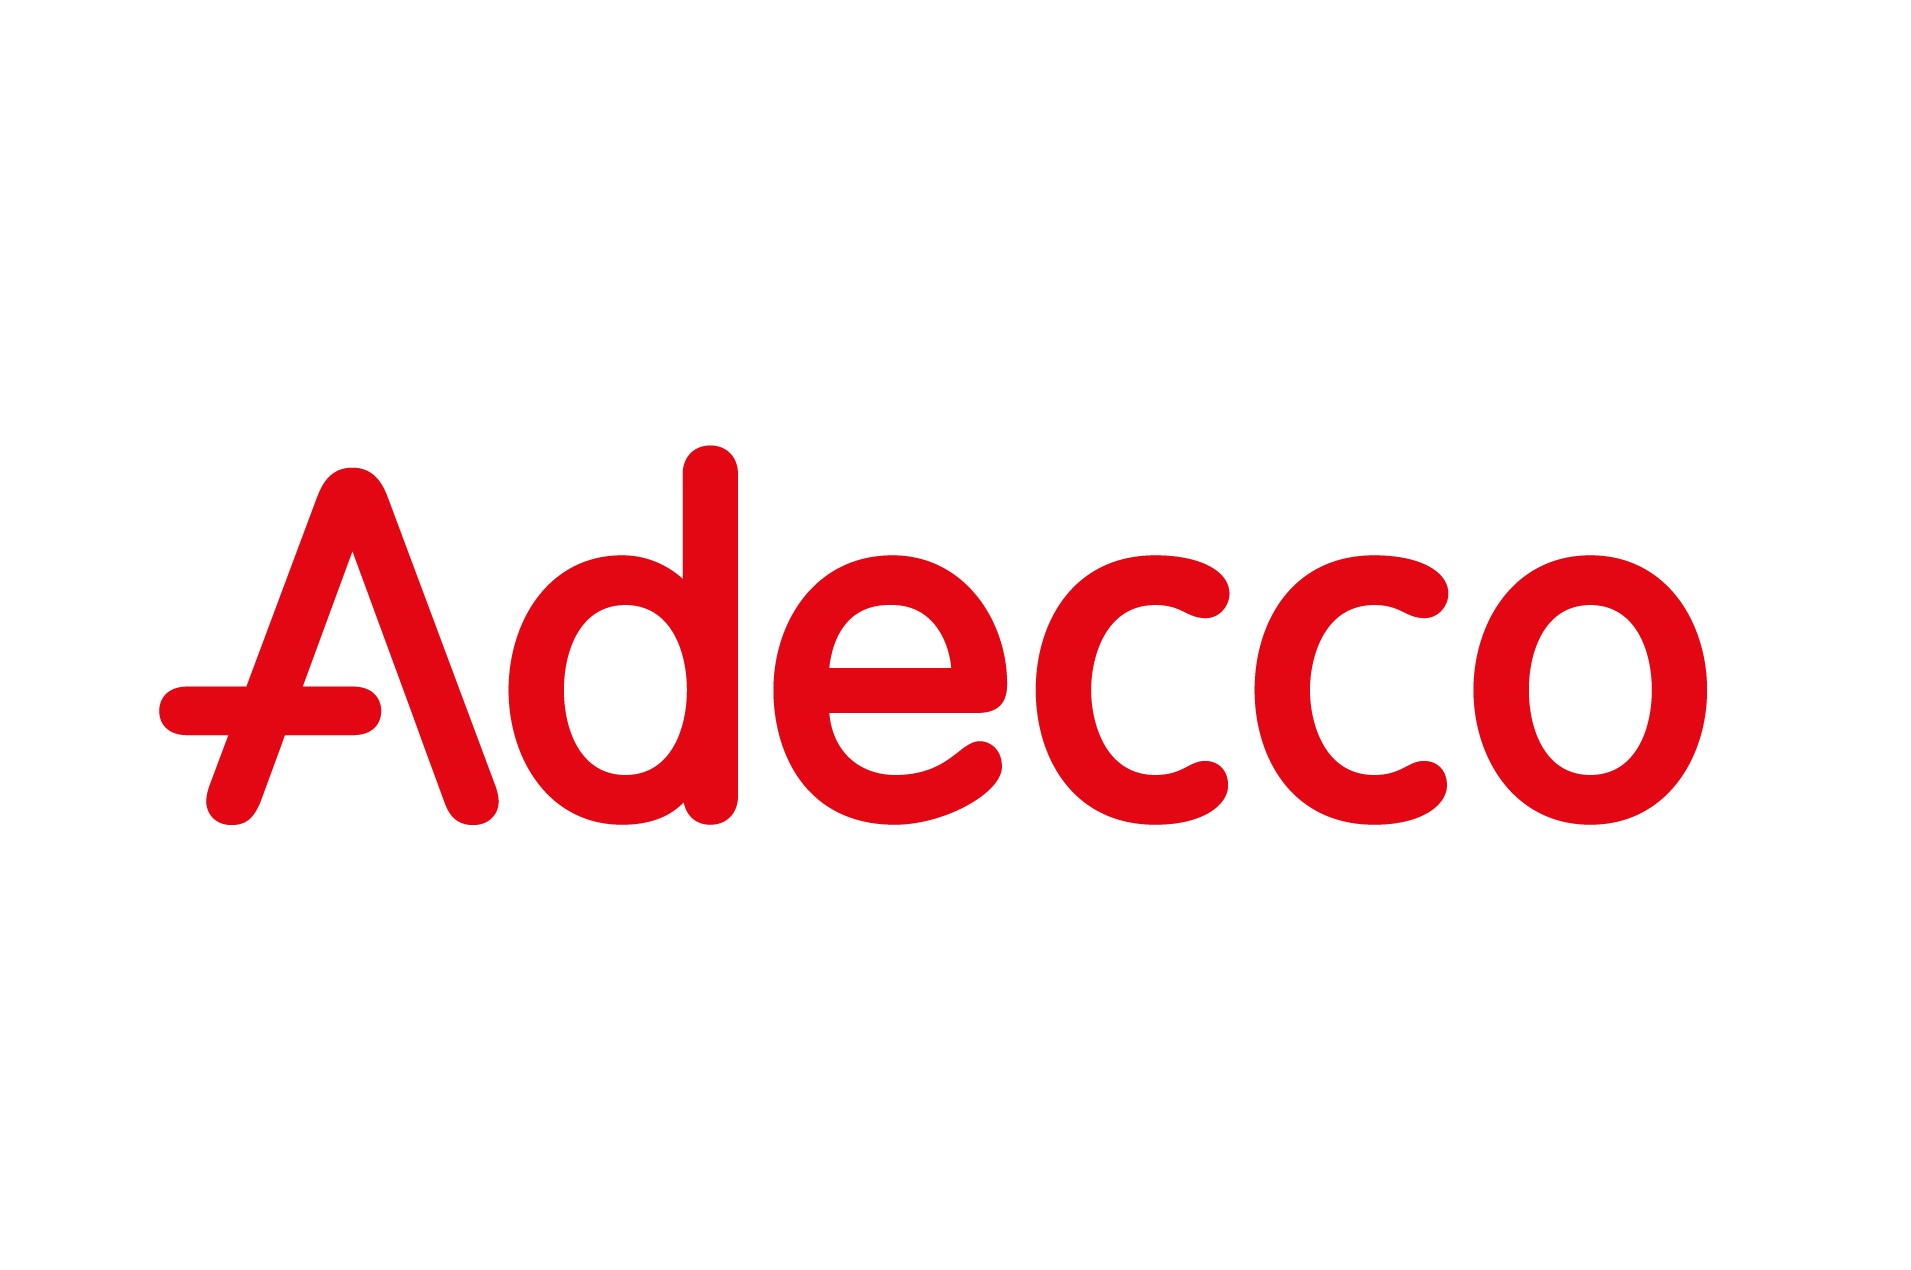 Adecco Logo - File:Adecco logo red NY.gif - Wikimedia Commons